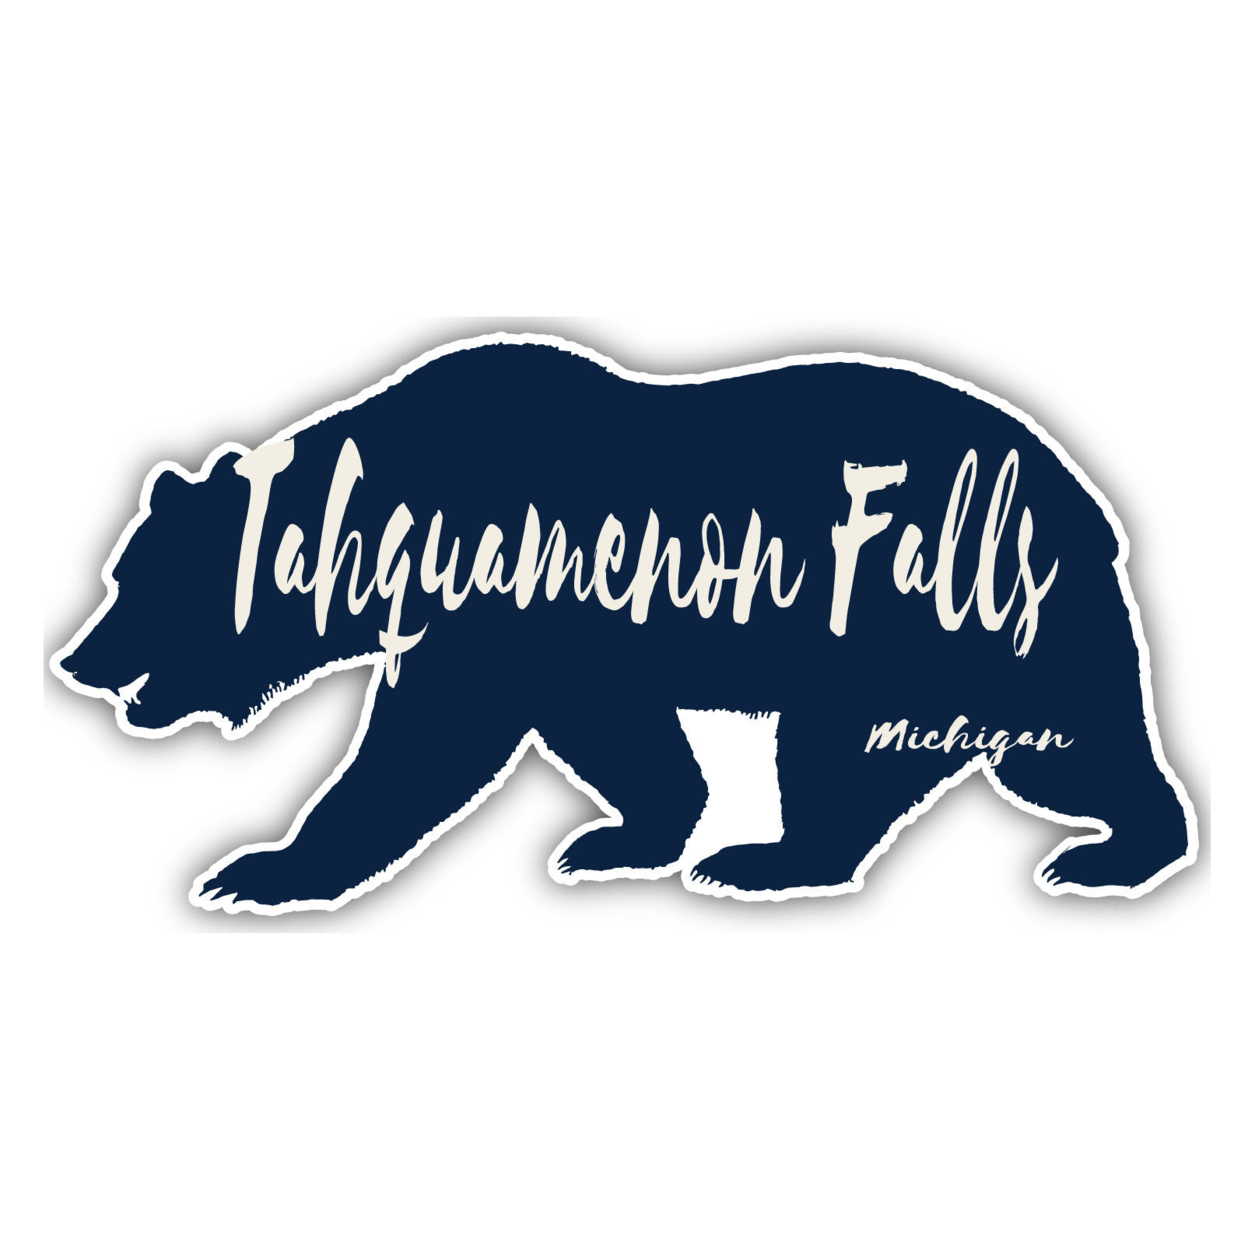 Tahquamenon Falls Michigan Souvenir Decorative Stickers (Choose Theme And Size) - Single Unit, 4-Inch, Bear